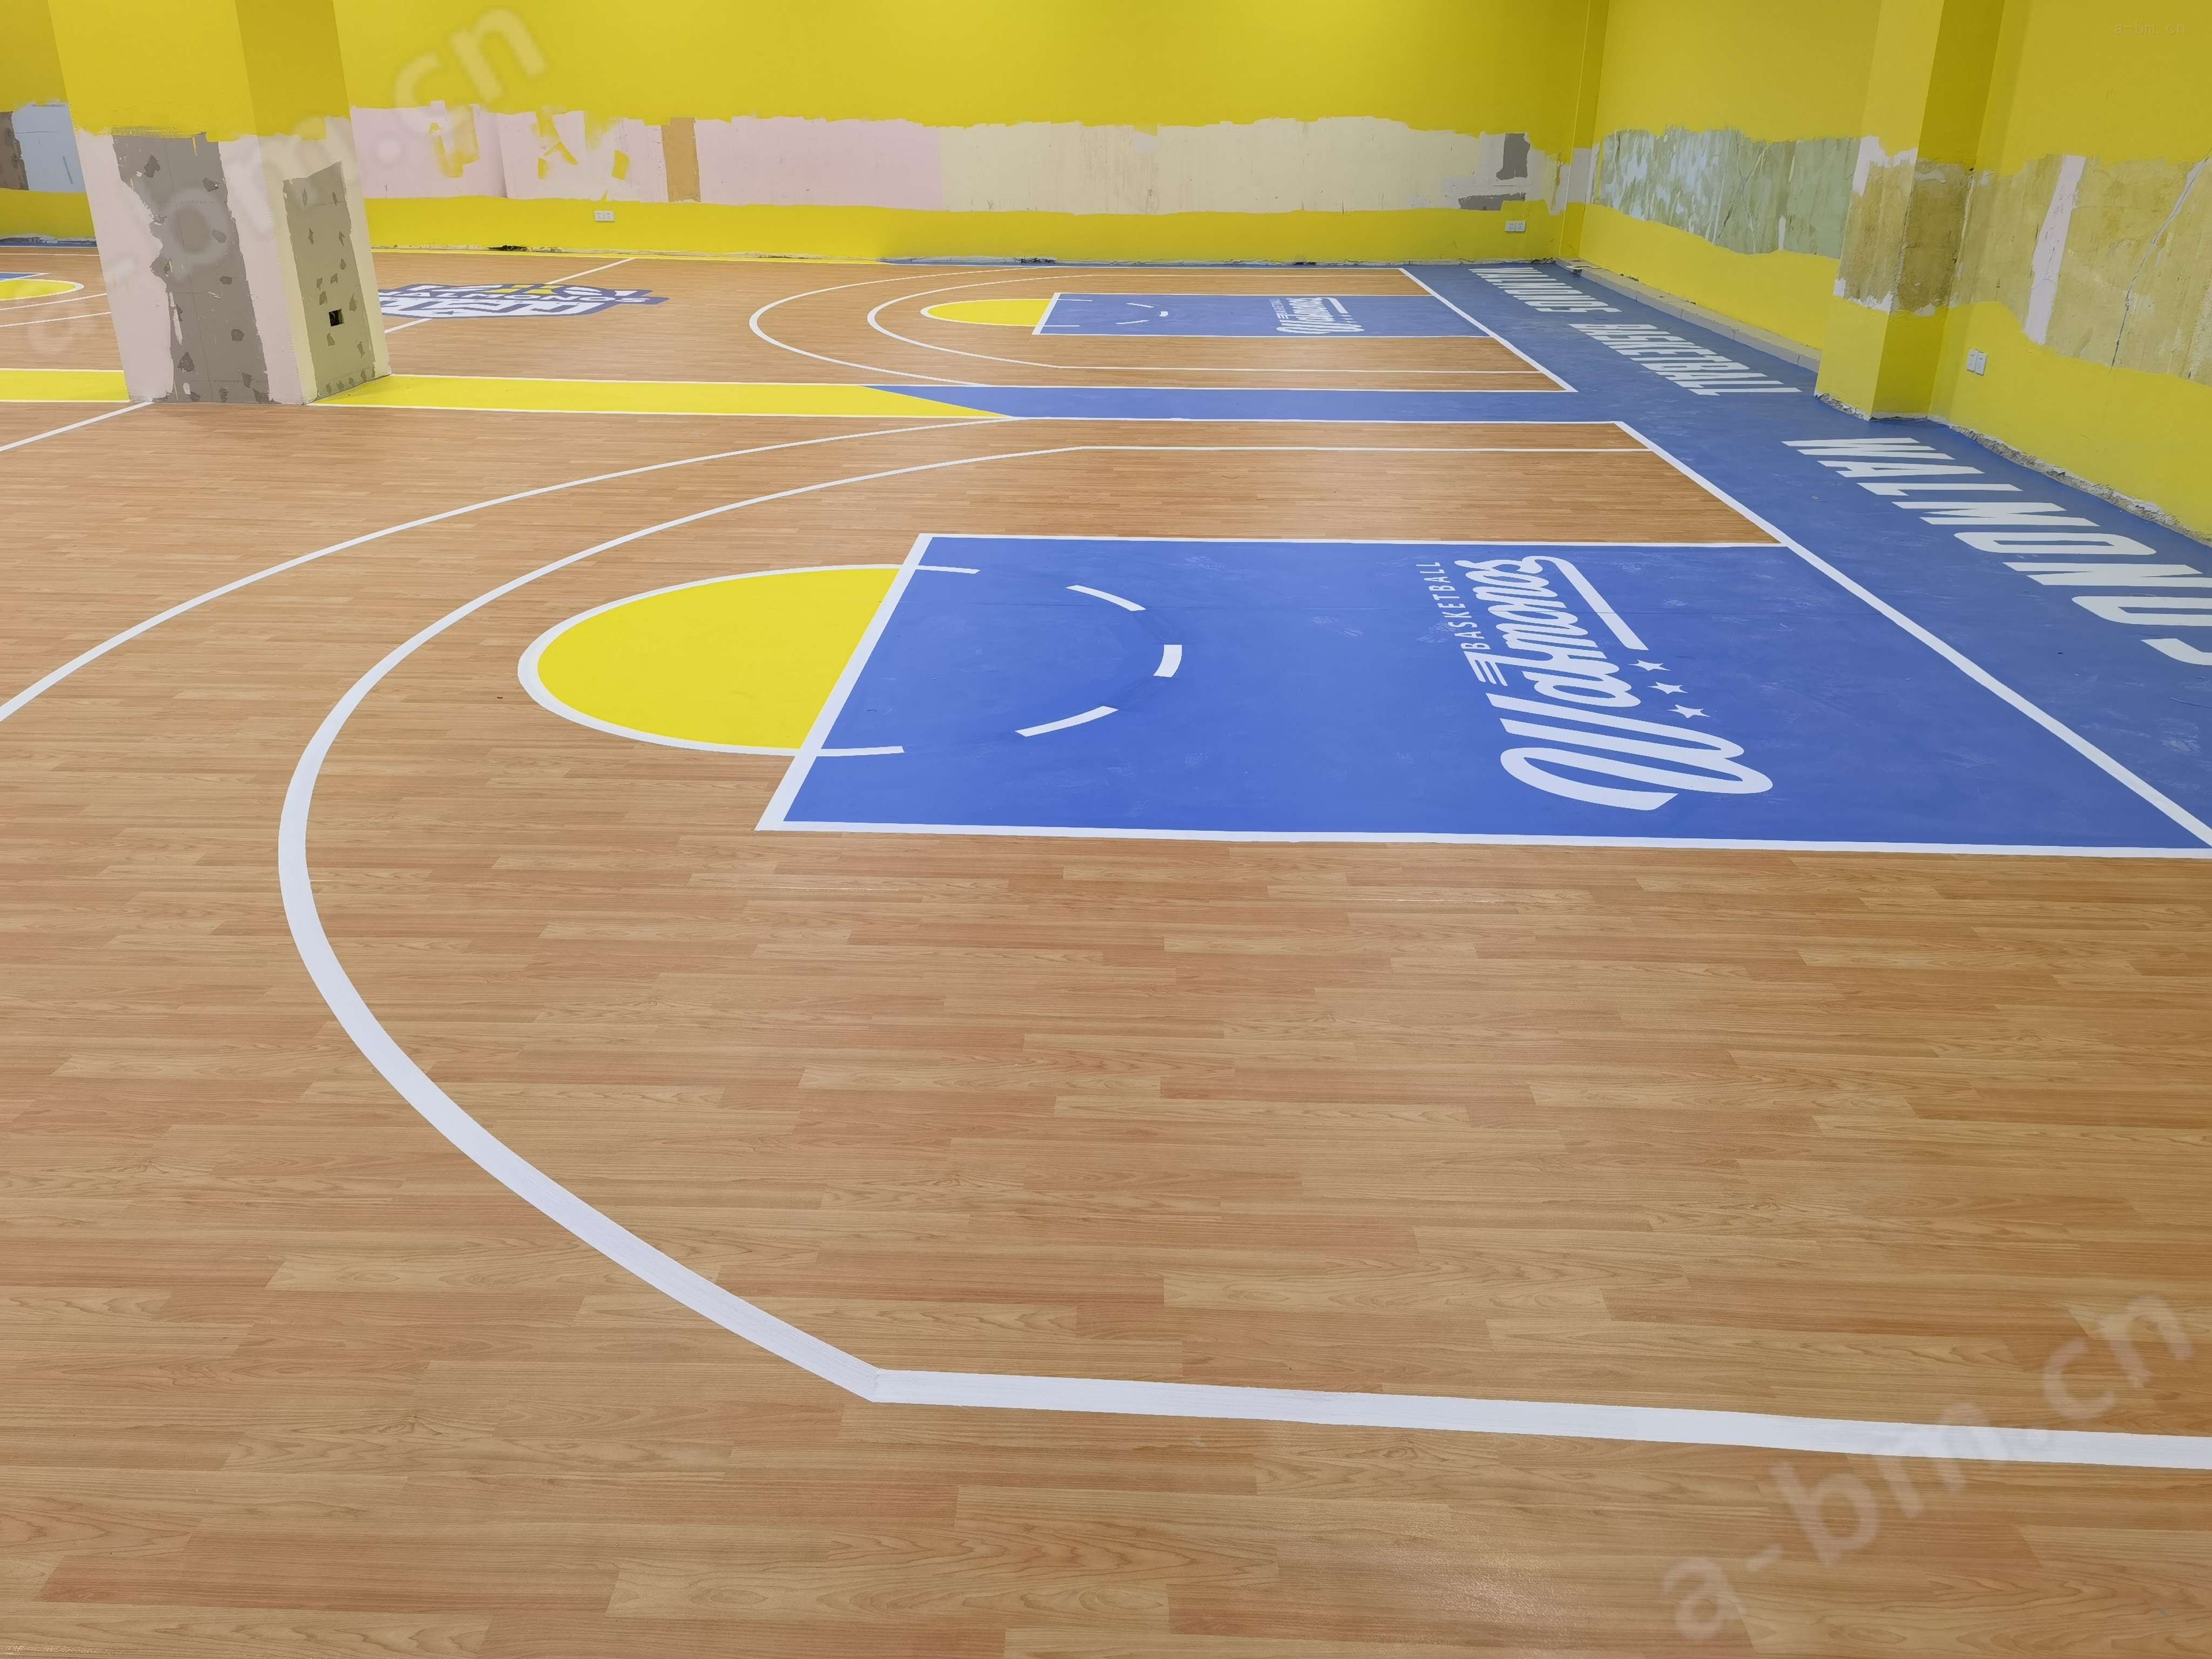 扬州邗江区印象汇篮球场运动地板